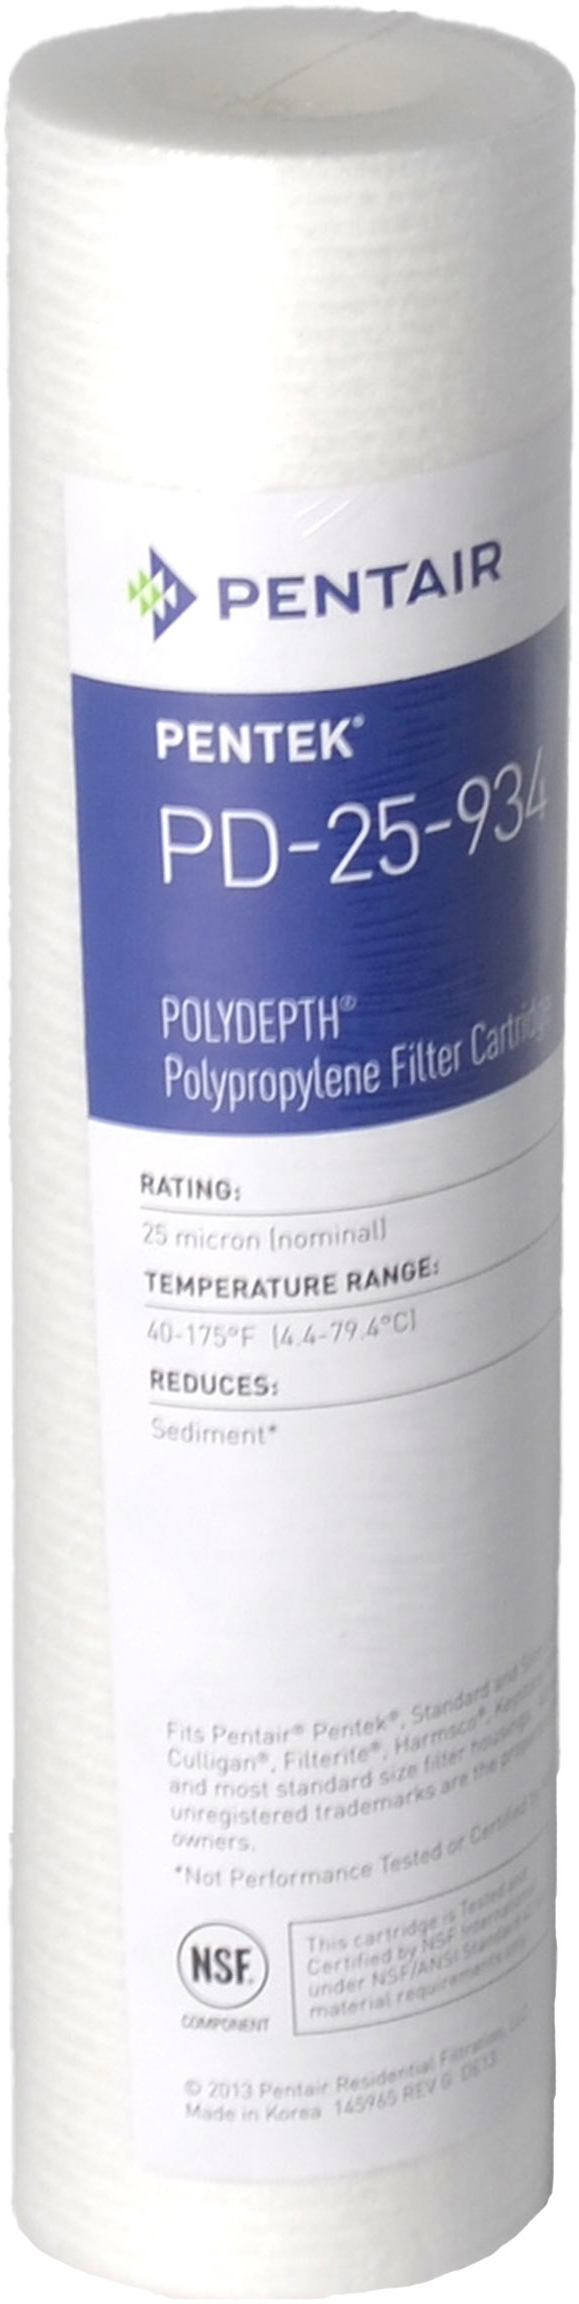 Картридж для фильтра Pentek PD-25-934 Polydepth (155751-43)